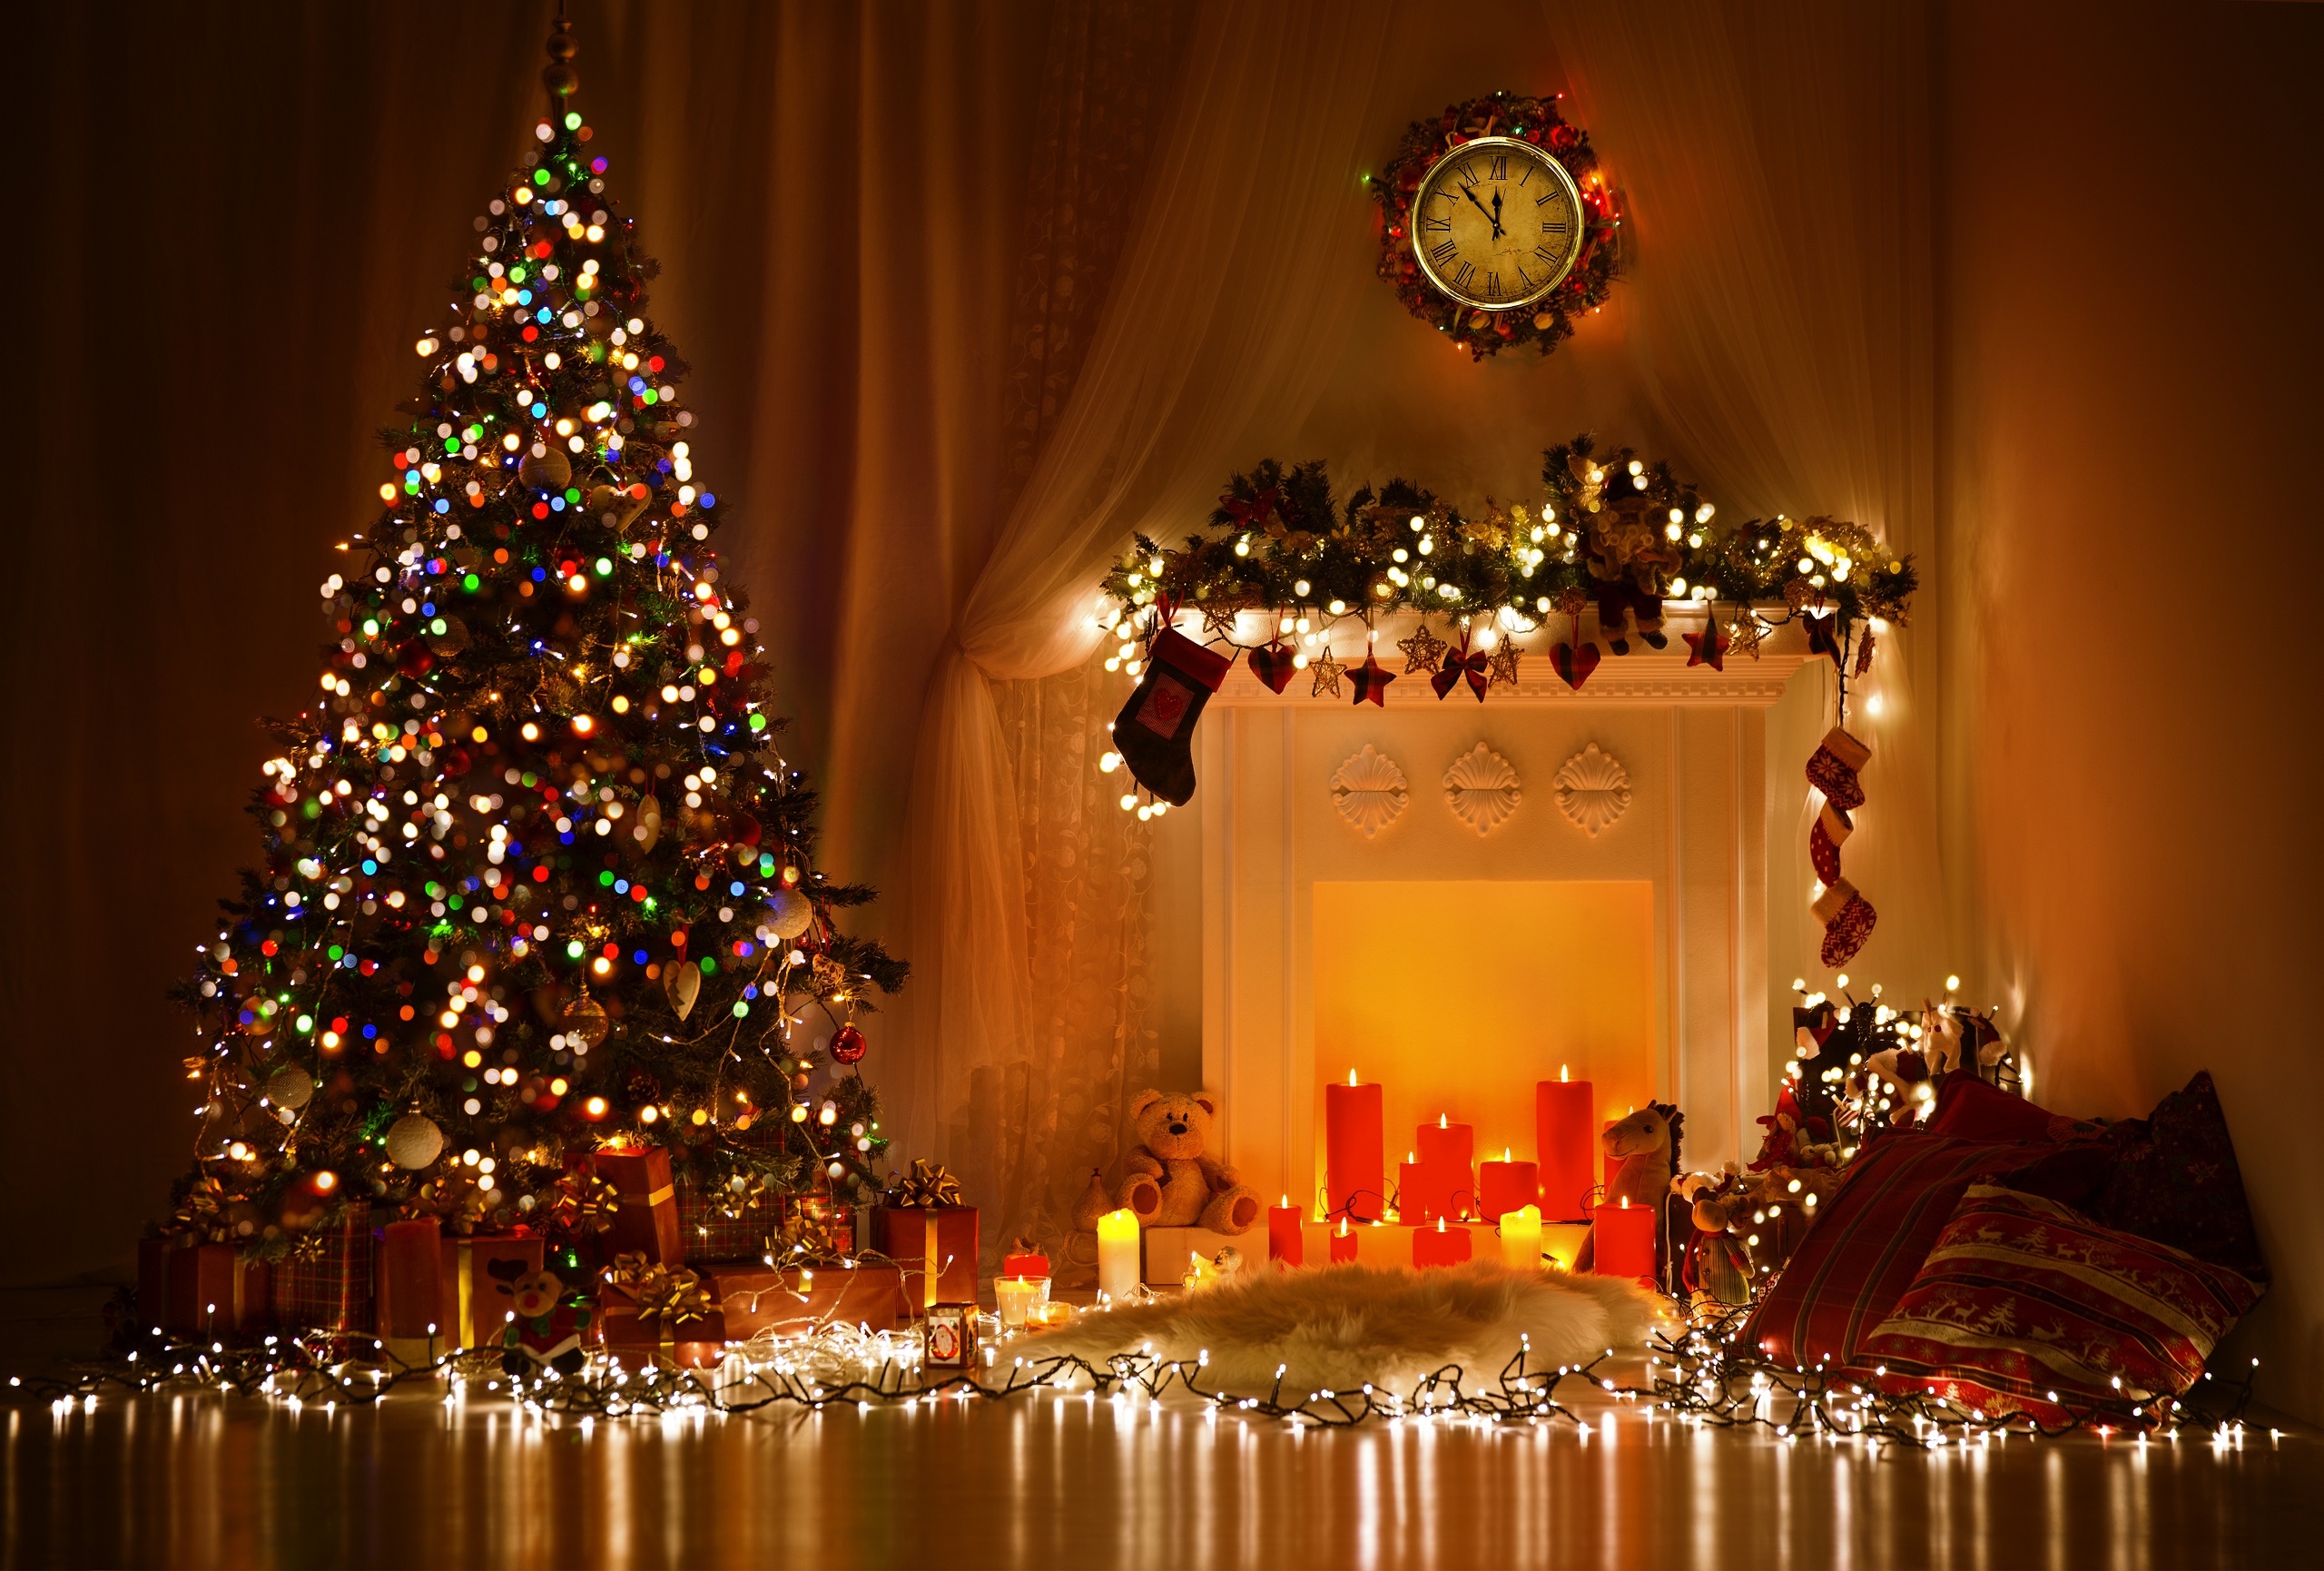 Download mobile wallpaper Teddy Bear, Christmas, Holiday, Room, Gift, Christmas Tree, Candle, Christmas Ornaments, Christmas Lights for free.